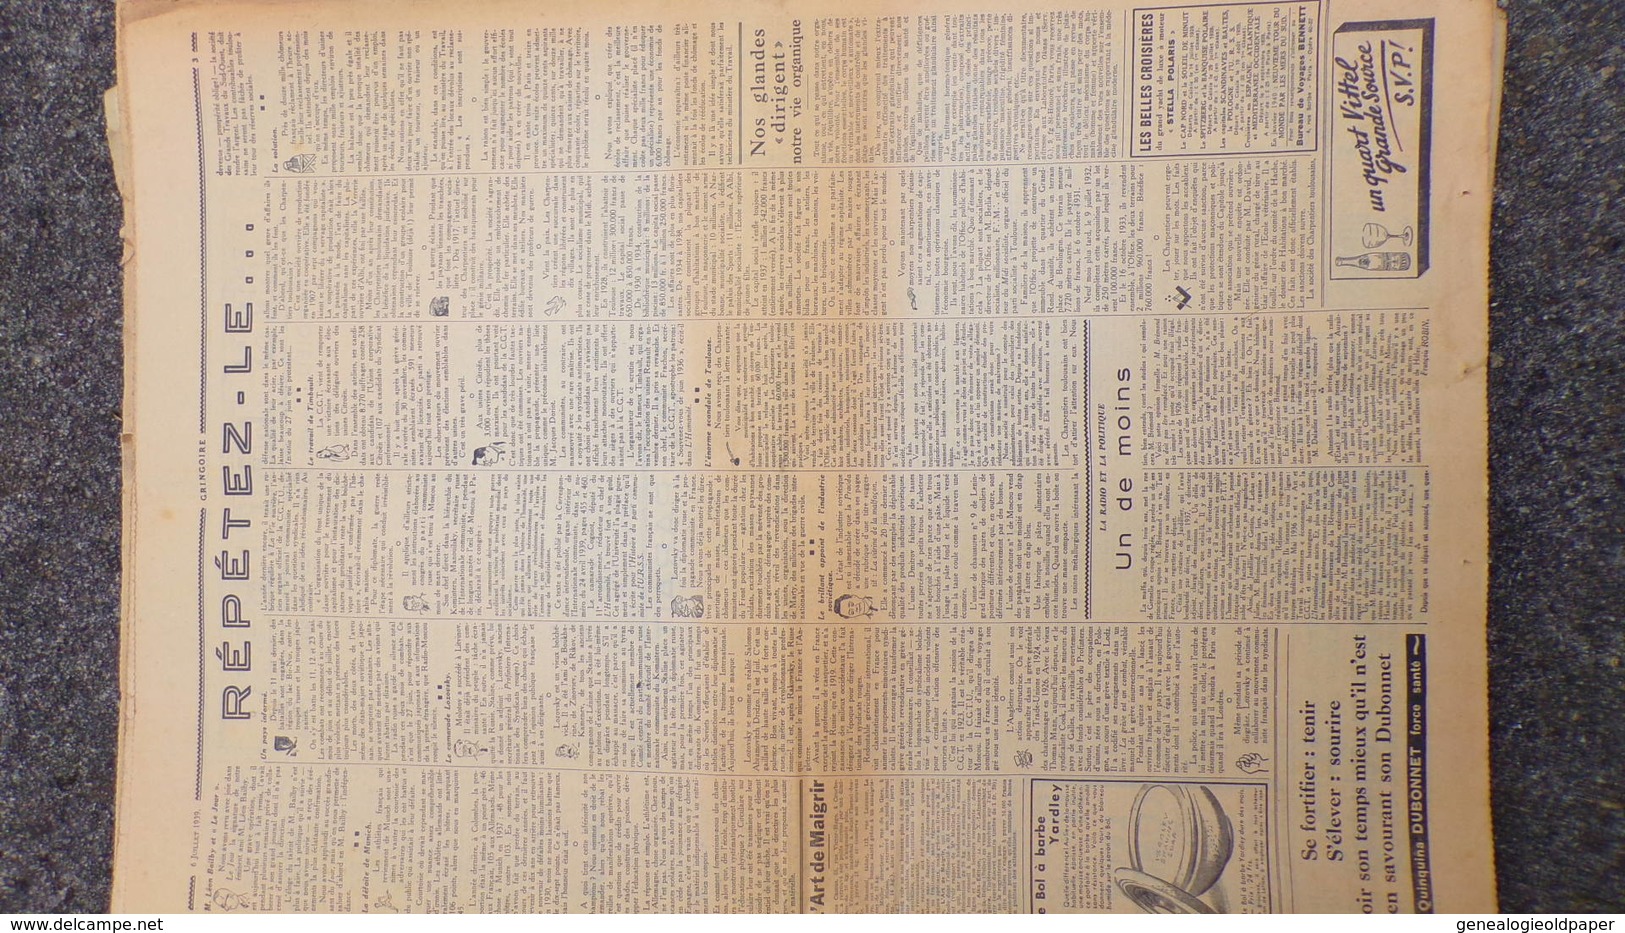 GRINGOIRE -6 JUILLET 1939-N° 556-JOURNAL WW2 PRESSE HEBDO-PARIS-BERAUD-TARDIEU-RECOULY-HITLER-TURQUIE-DANTAZIG-GAMELIN - Francese